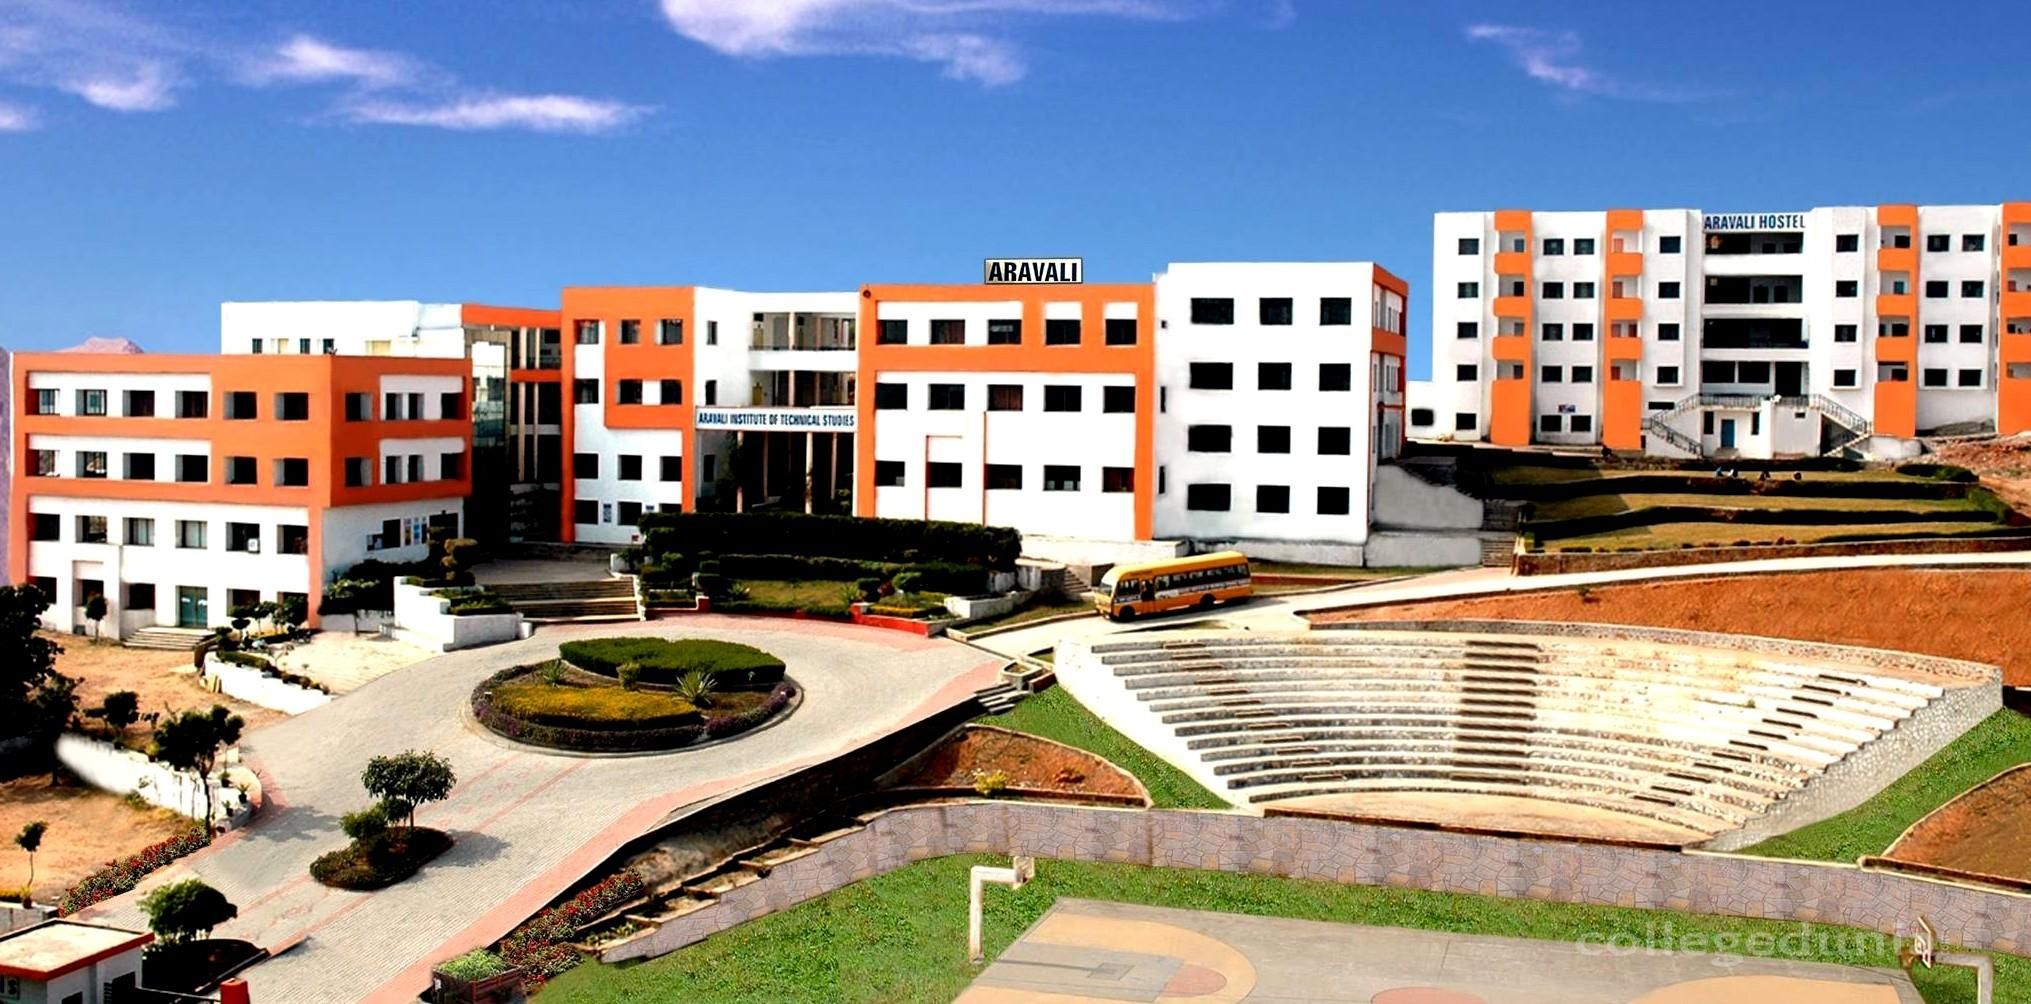 Aravali Institute of Technical Studies